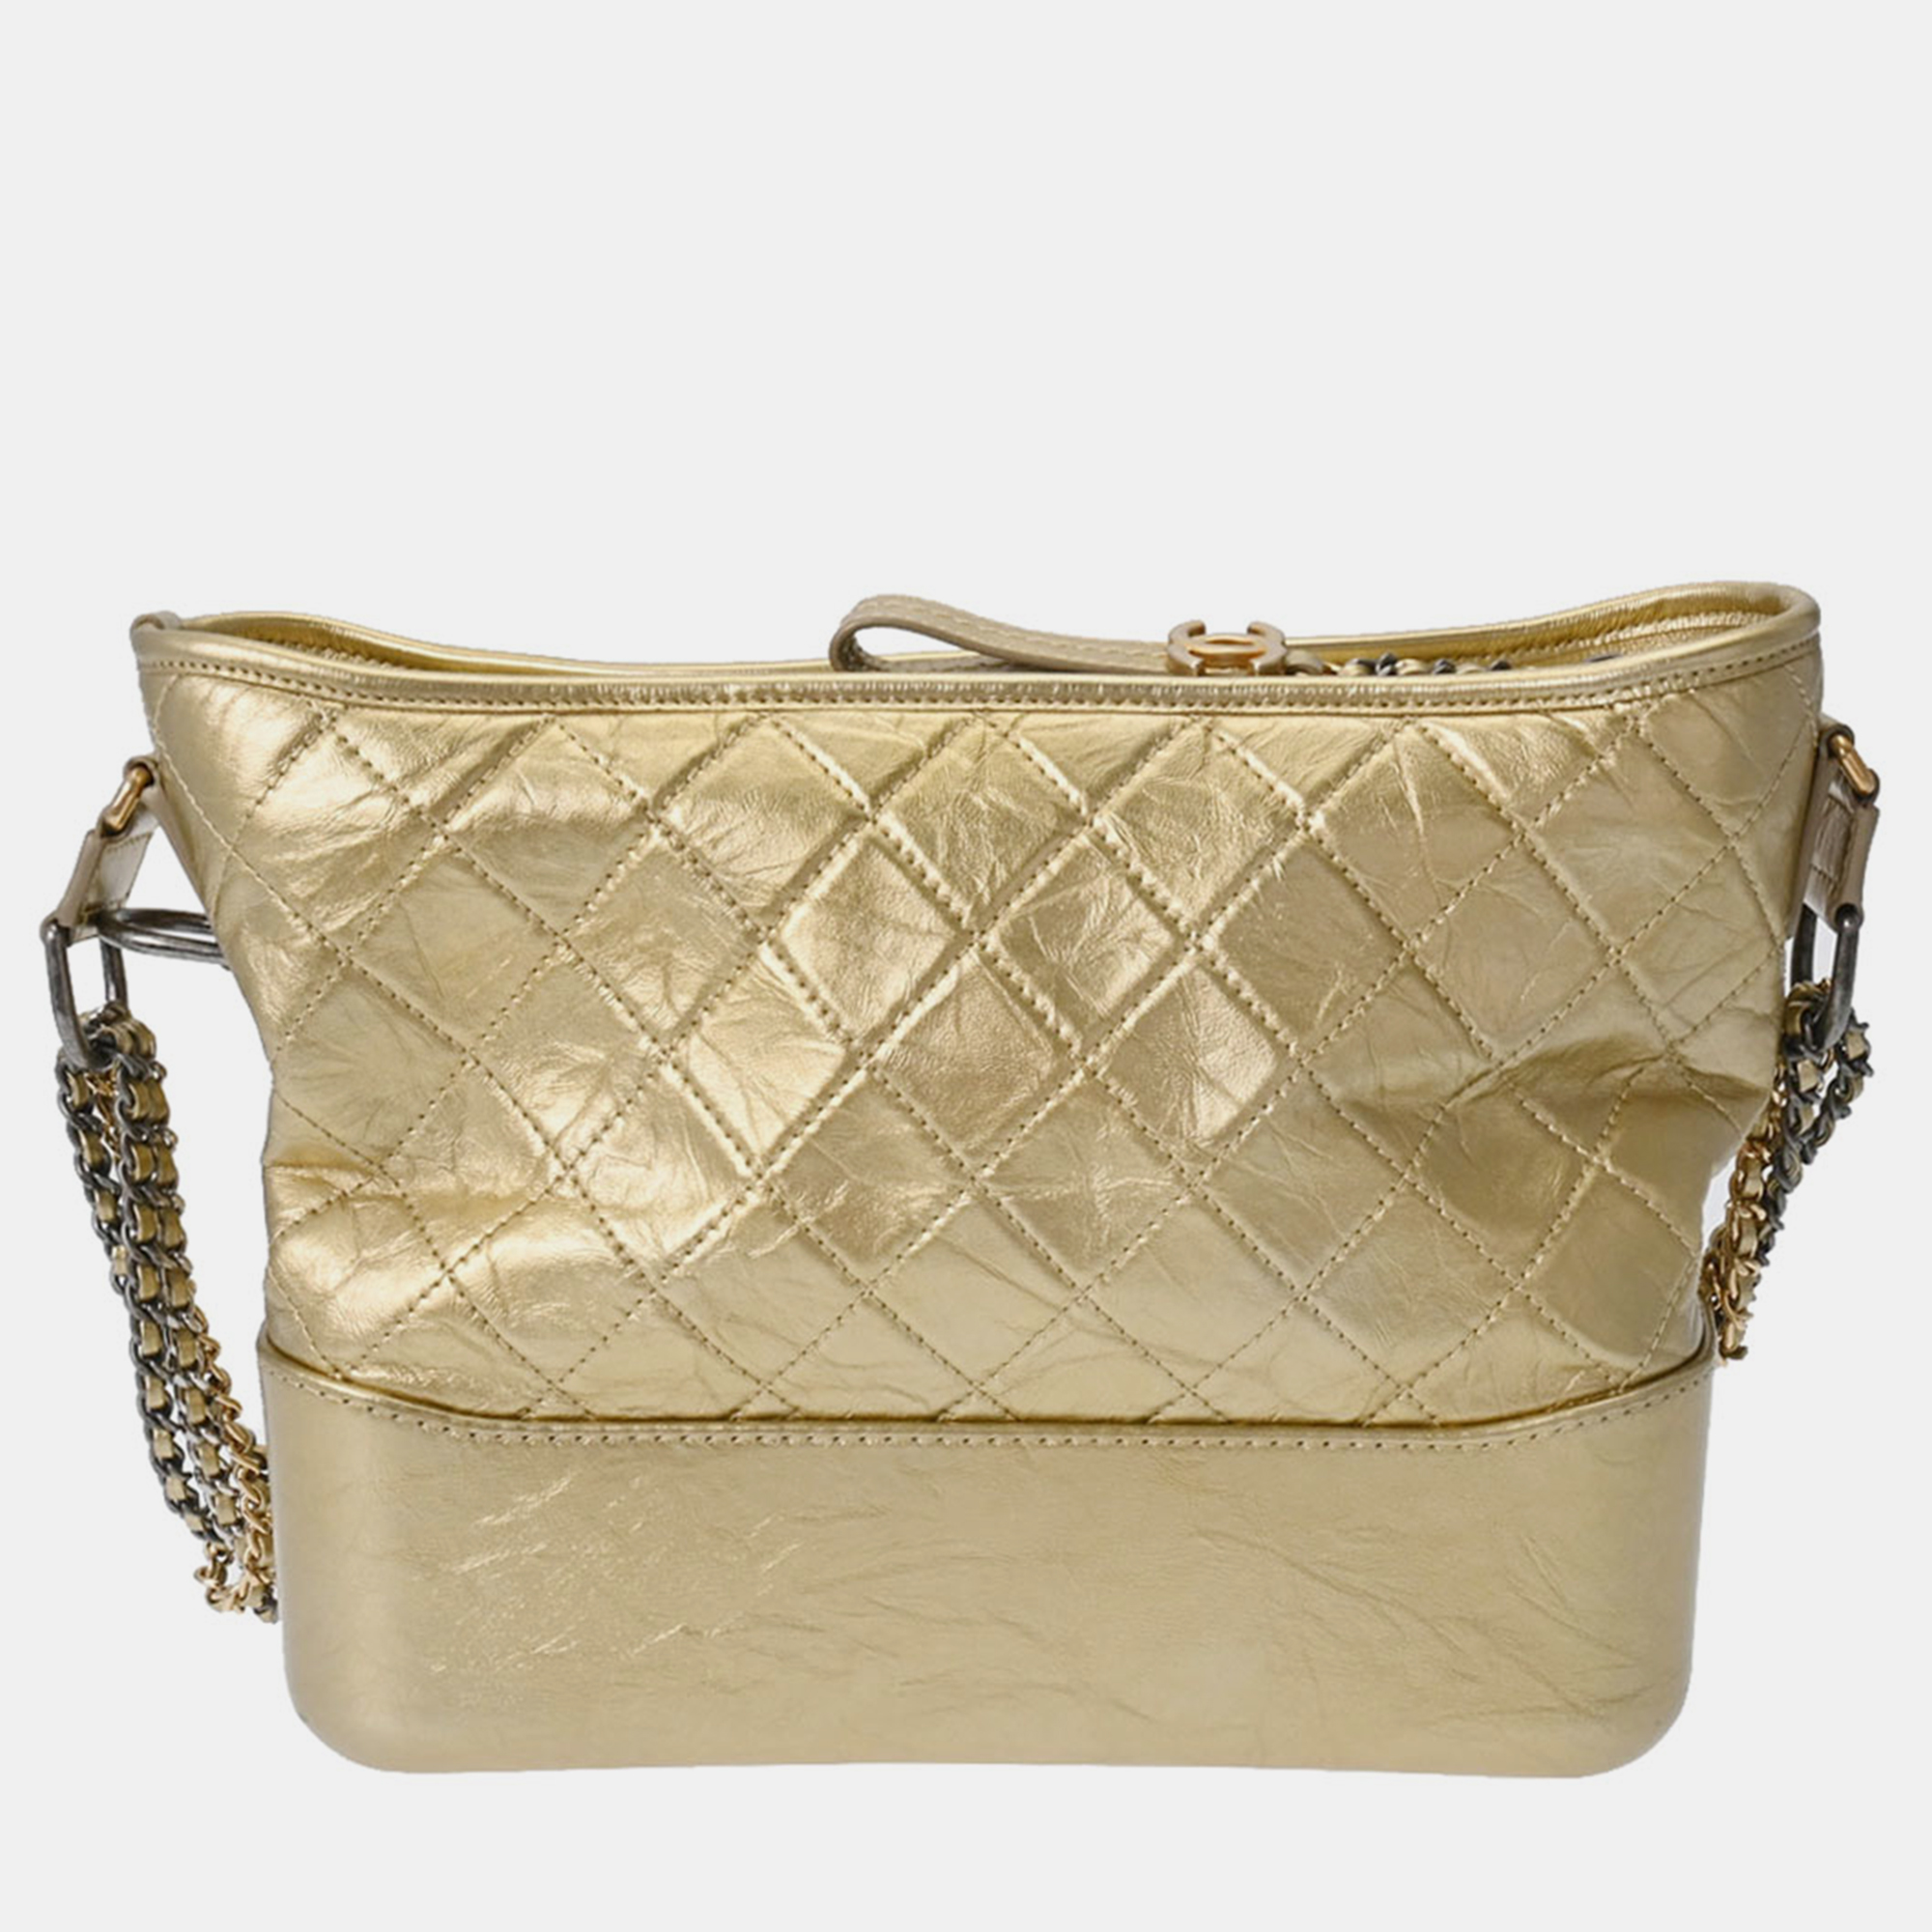 Chanel gold leather large gabrielle shoulder bag